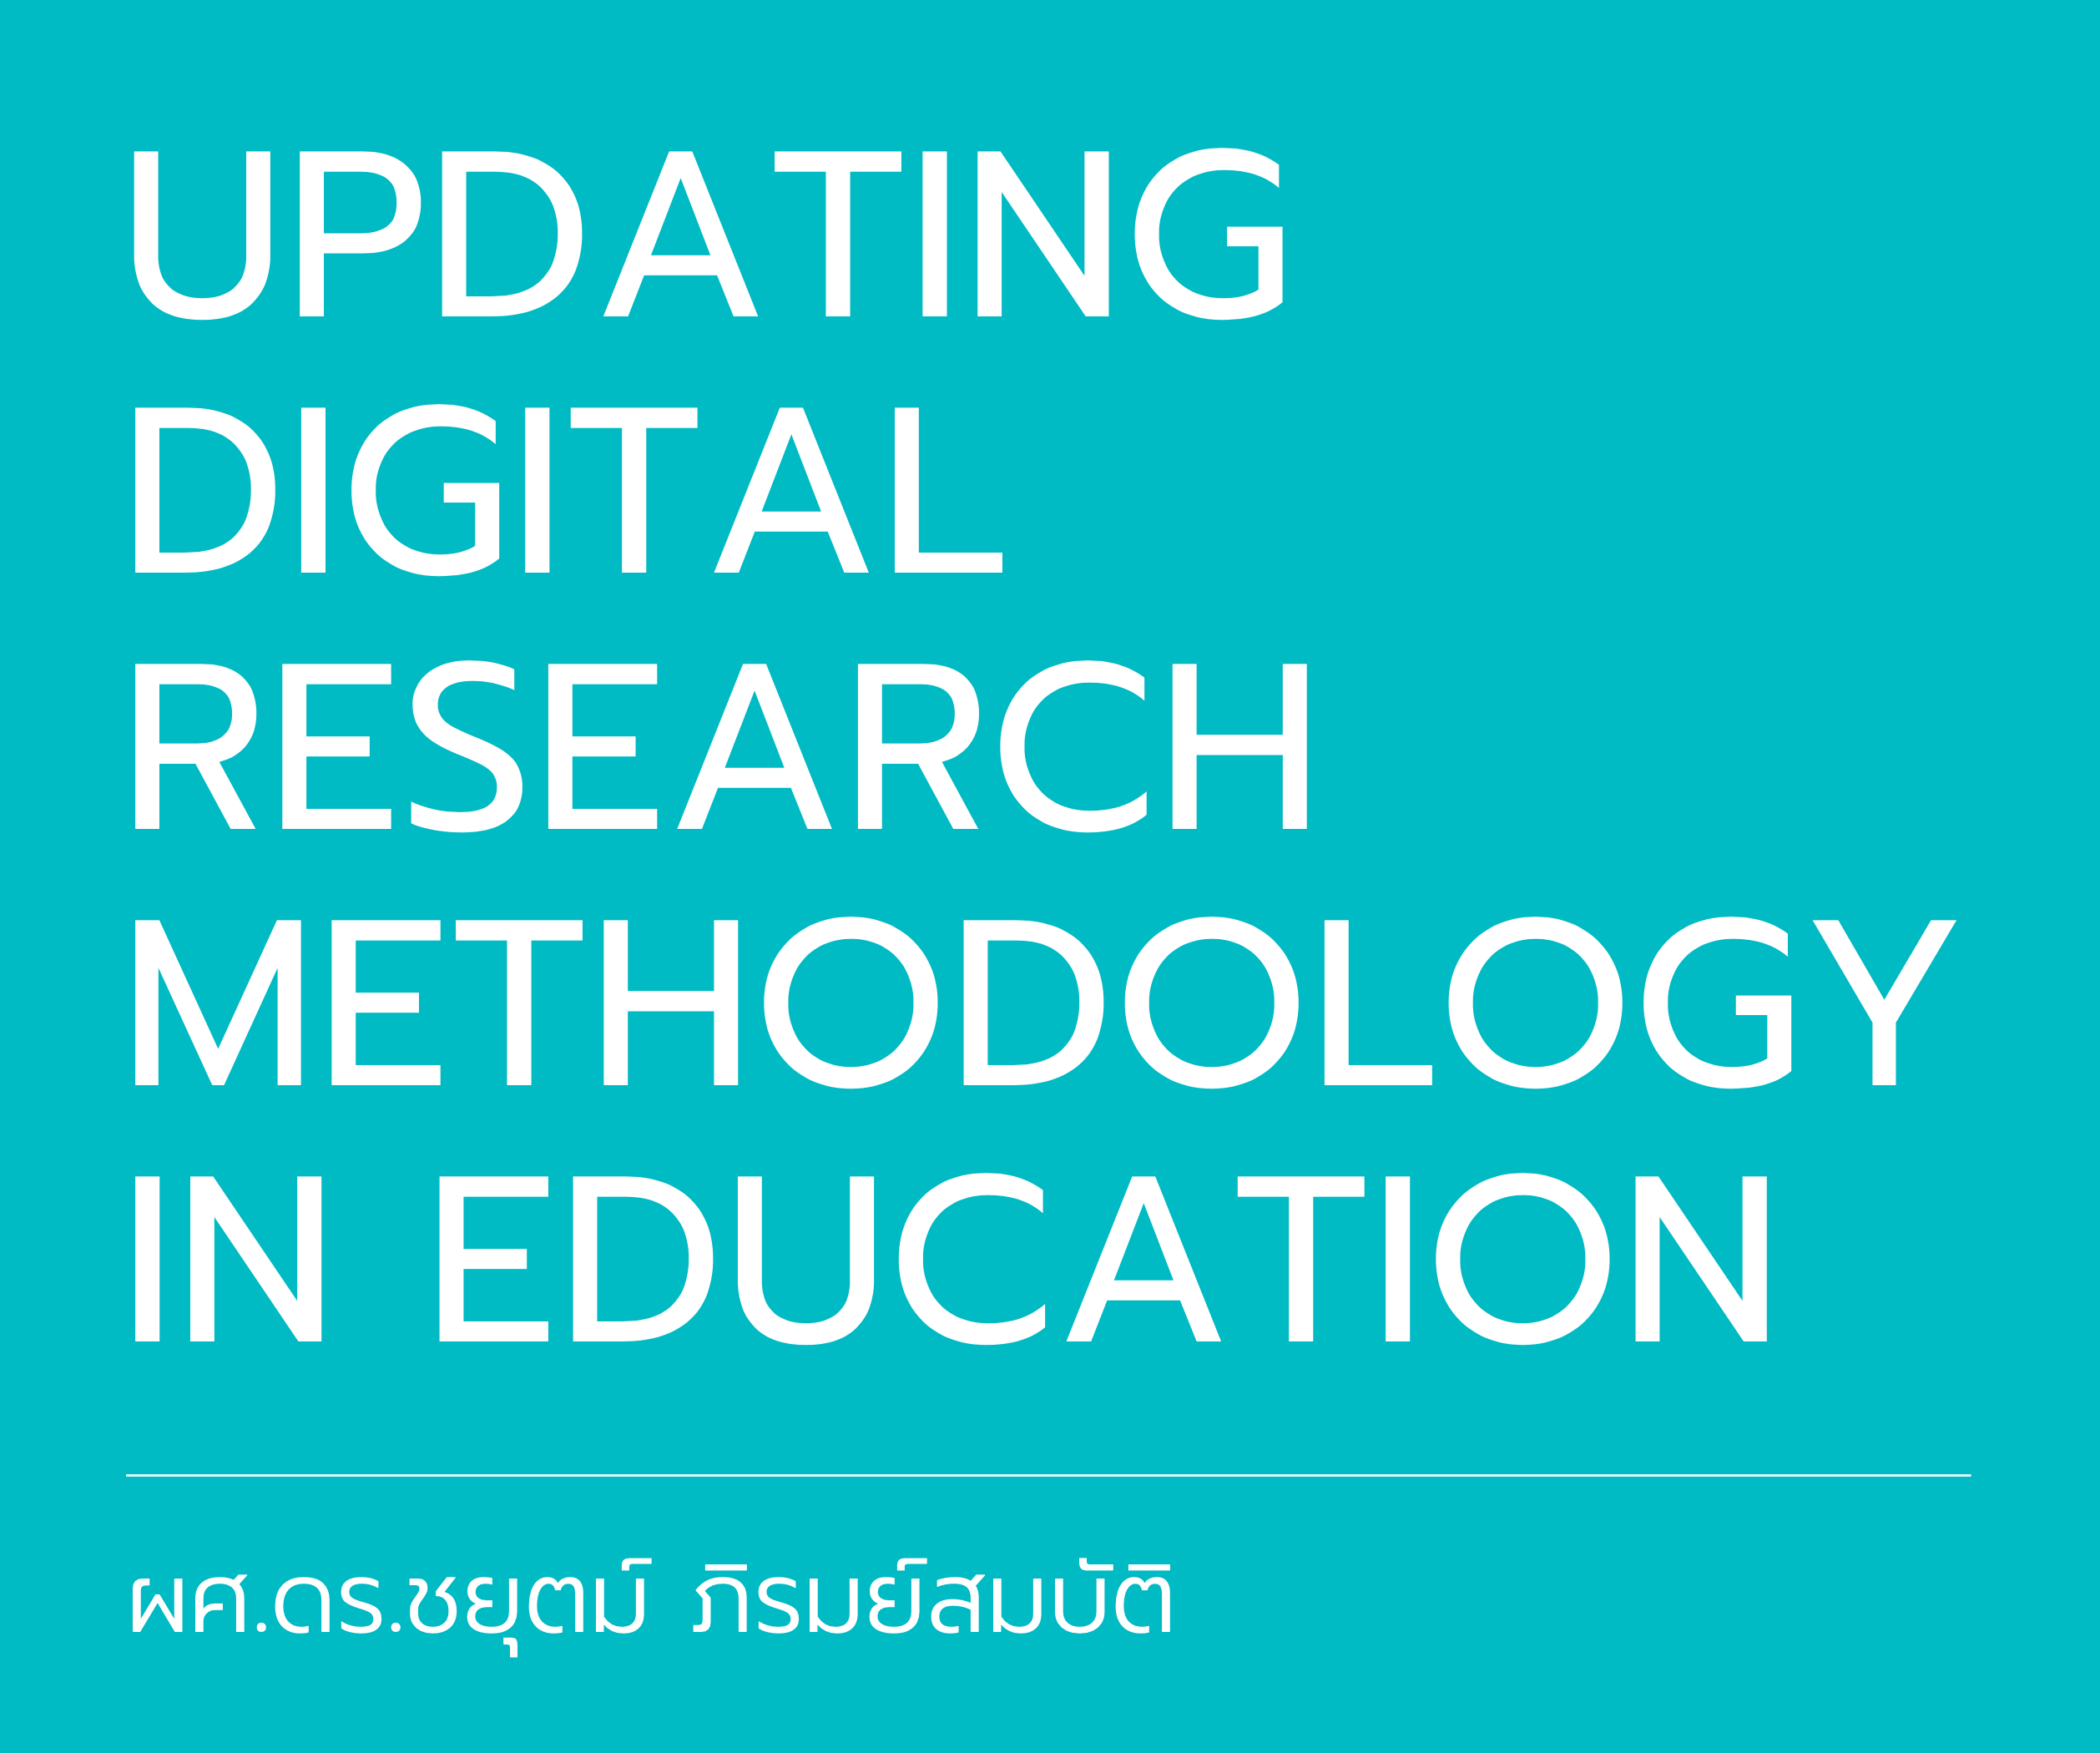 Workshop 4 - Updating Digital Research Methodology in Education